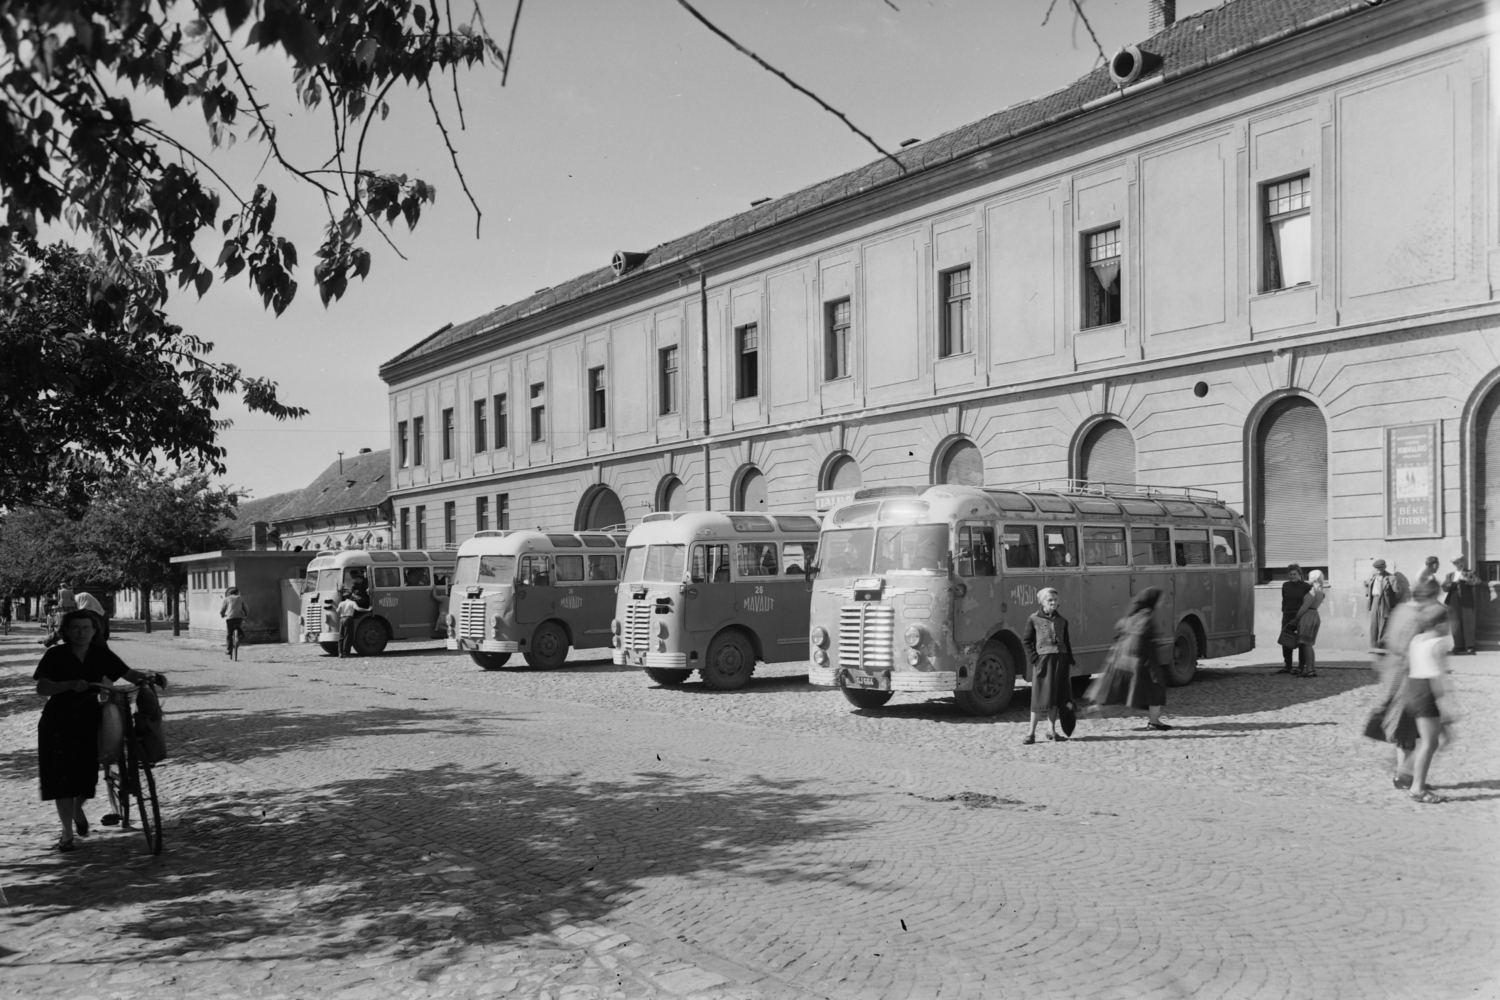 V Moháči před nádražím zachycená flotila autobusů Ikarus 30 v 50. letech. (foto: Wikipedia.org)